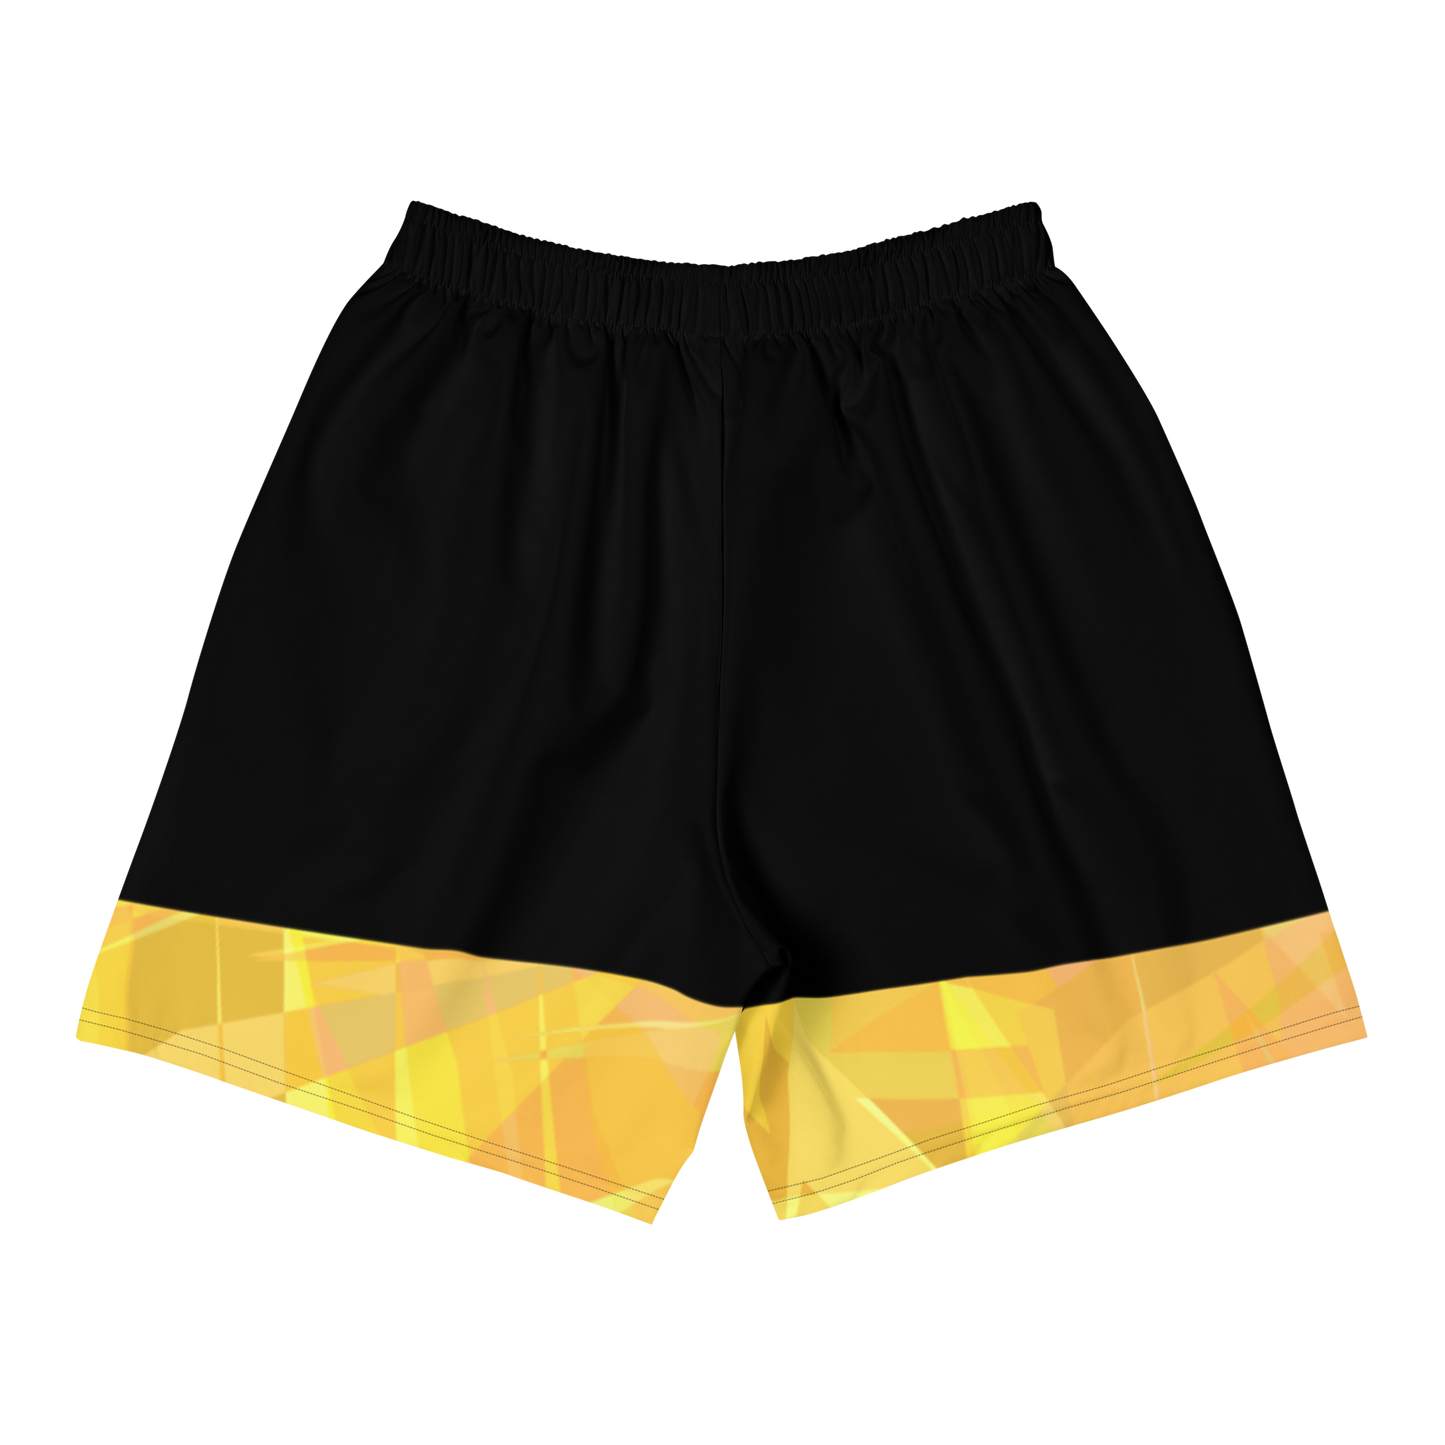 Sqdltd Starburst YWB Men's Athletic Shorts